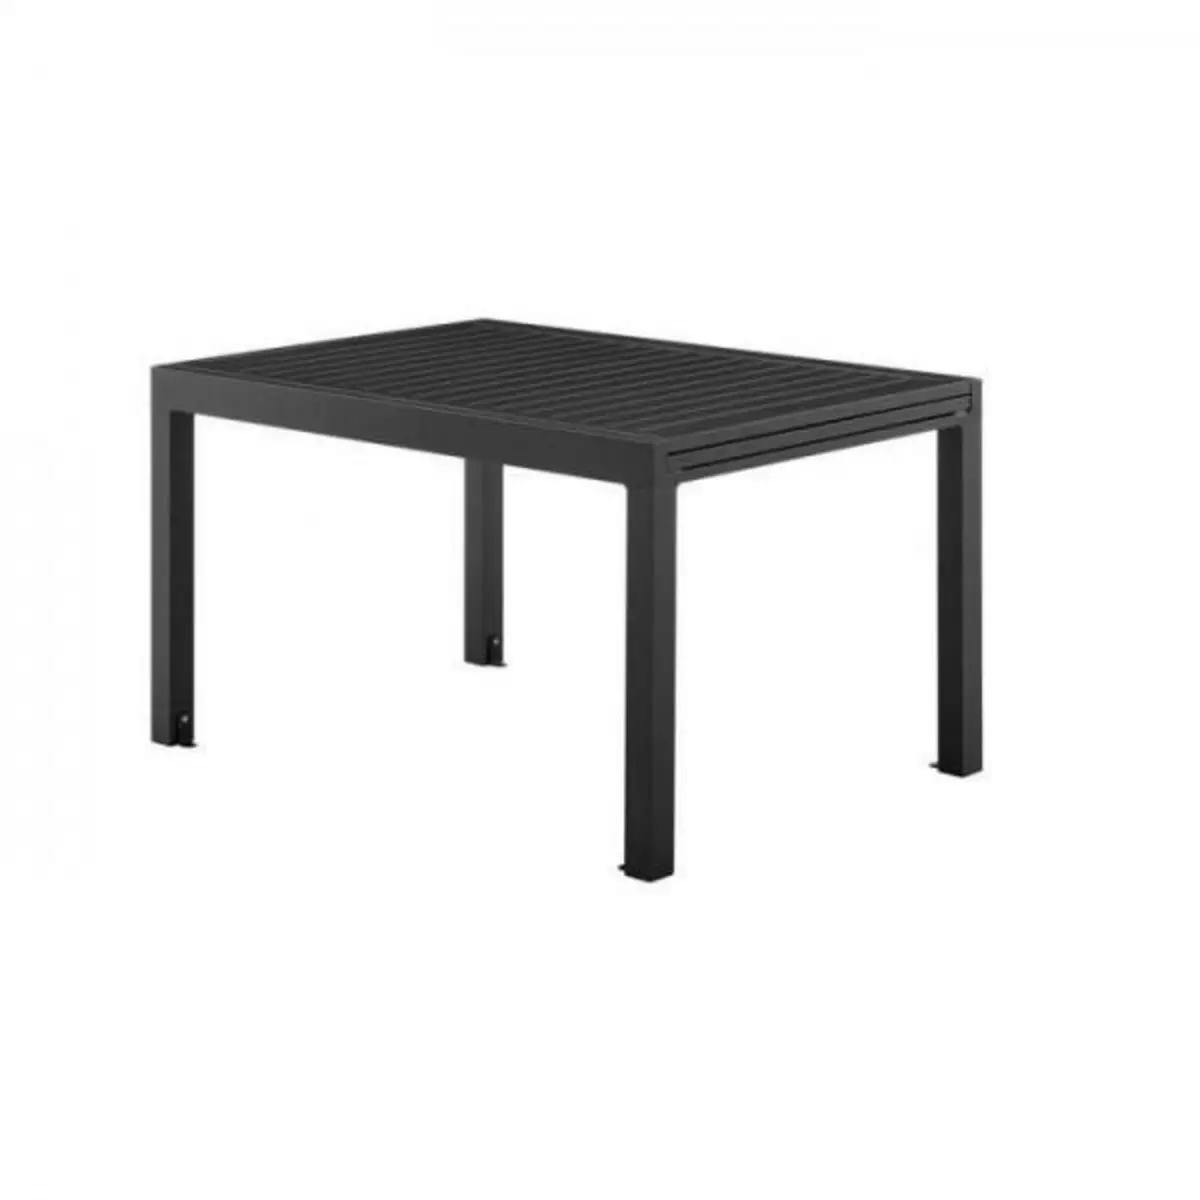 MARKET24 Table de jardin extensible rectangulaire 6 a 8 personnes - Gris foncé - En aluminium - 135 / 270 x 90 x 75 cm